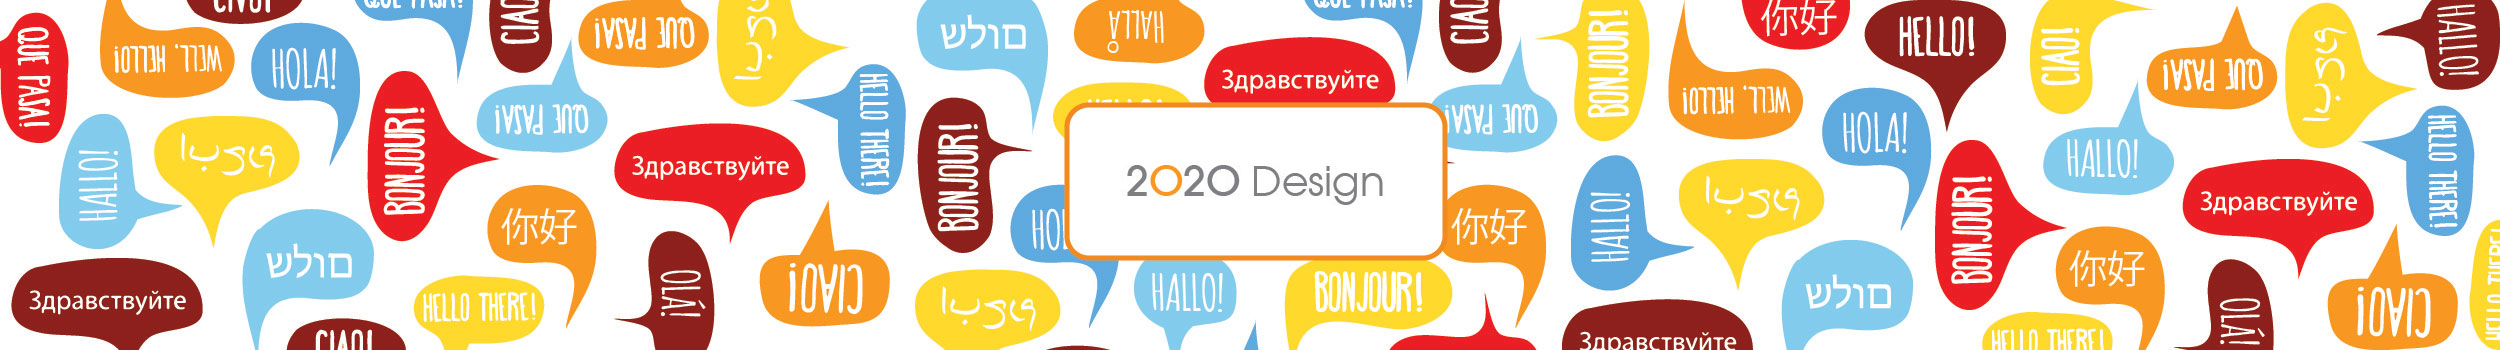 2020 Design Kitchen and Bath Design software